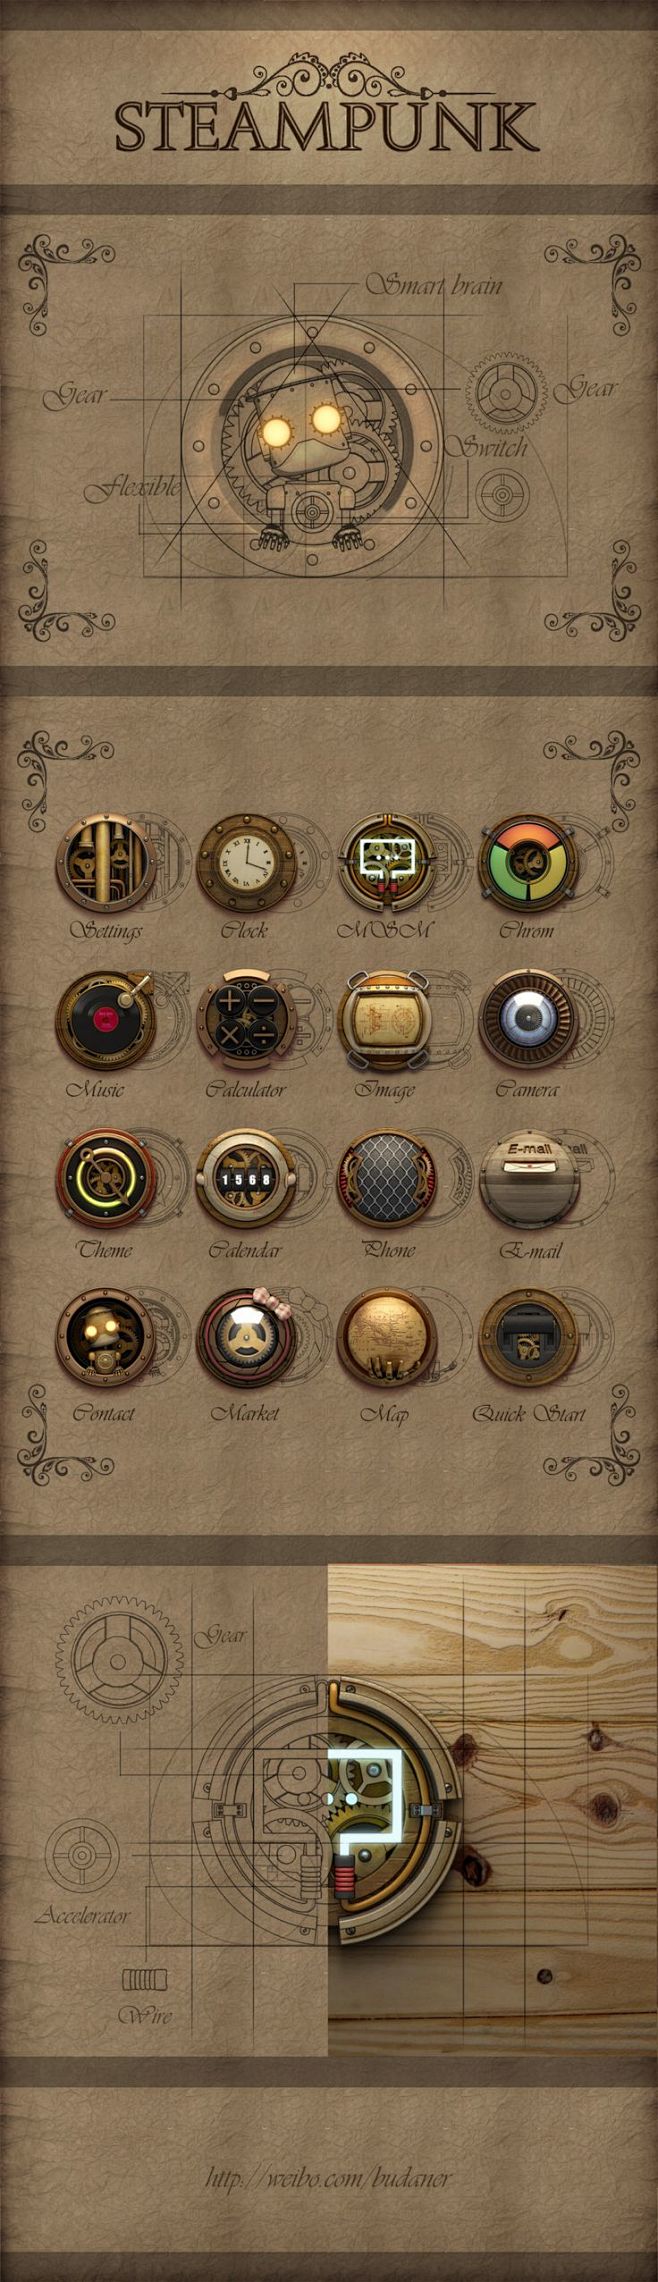 Steampunk ikon set b...